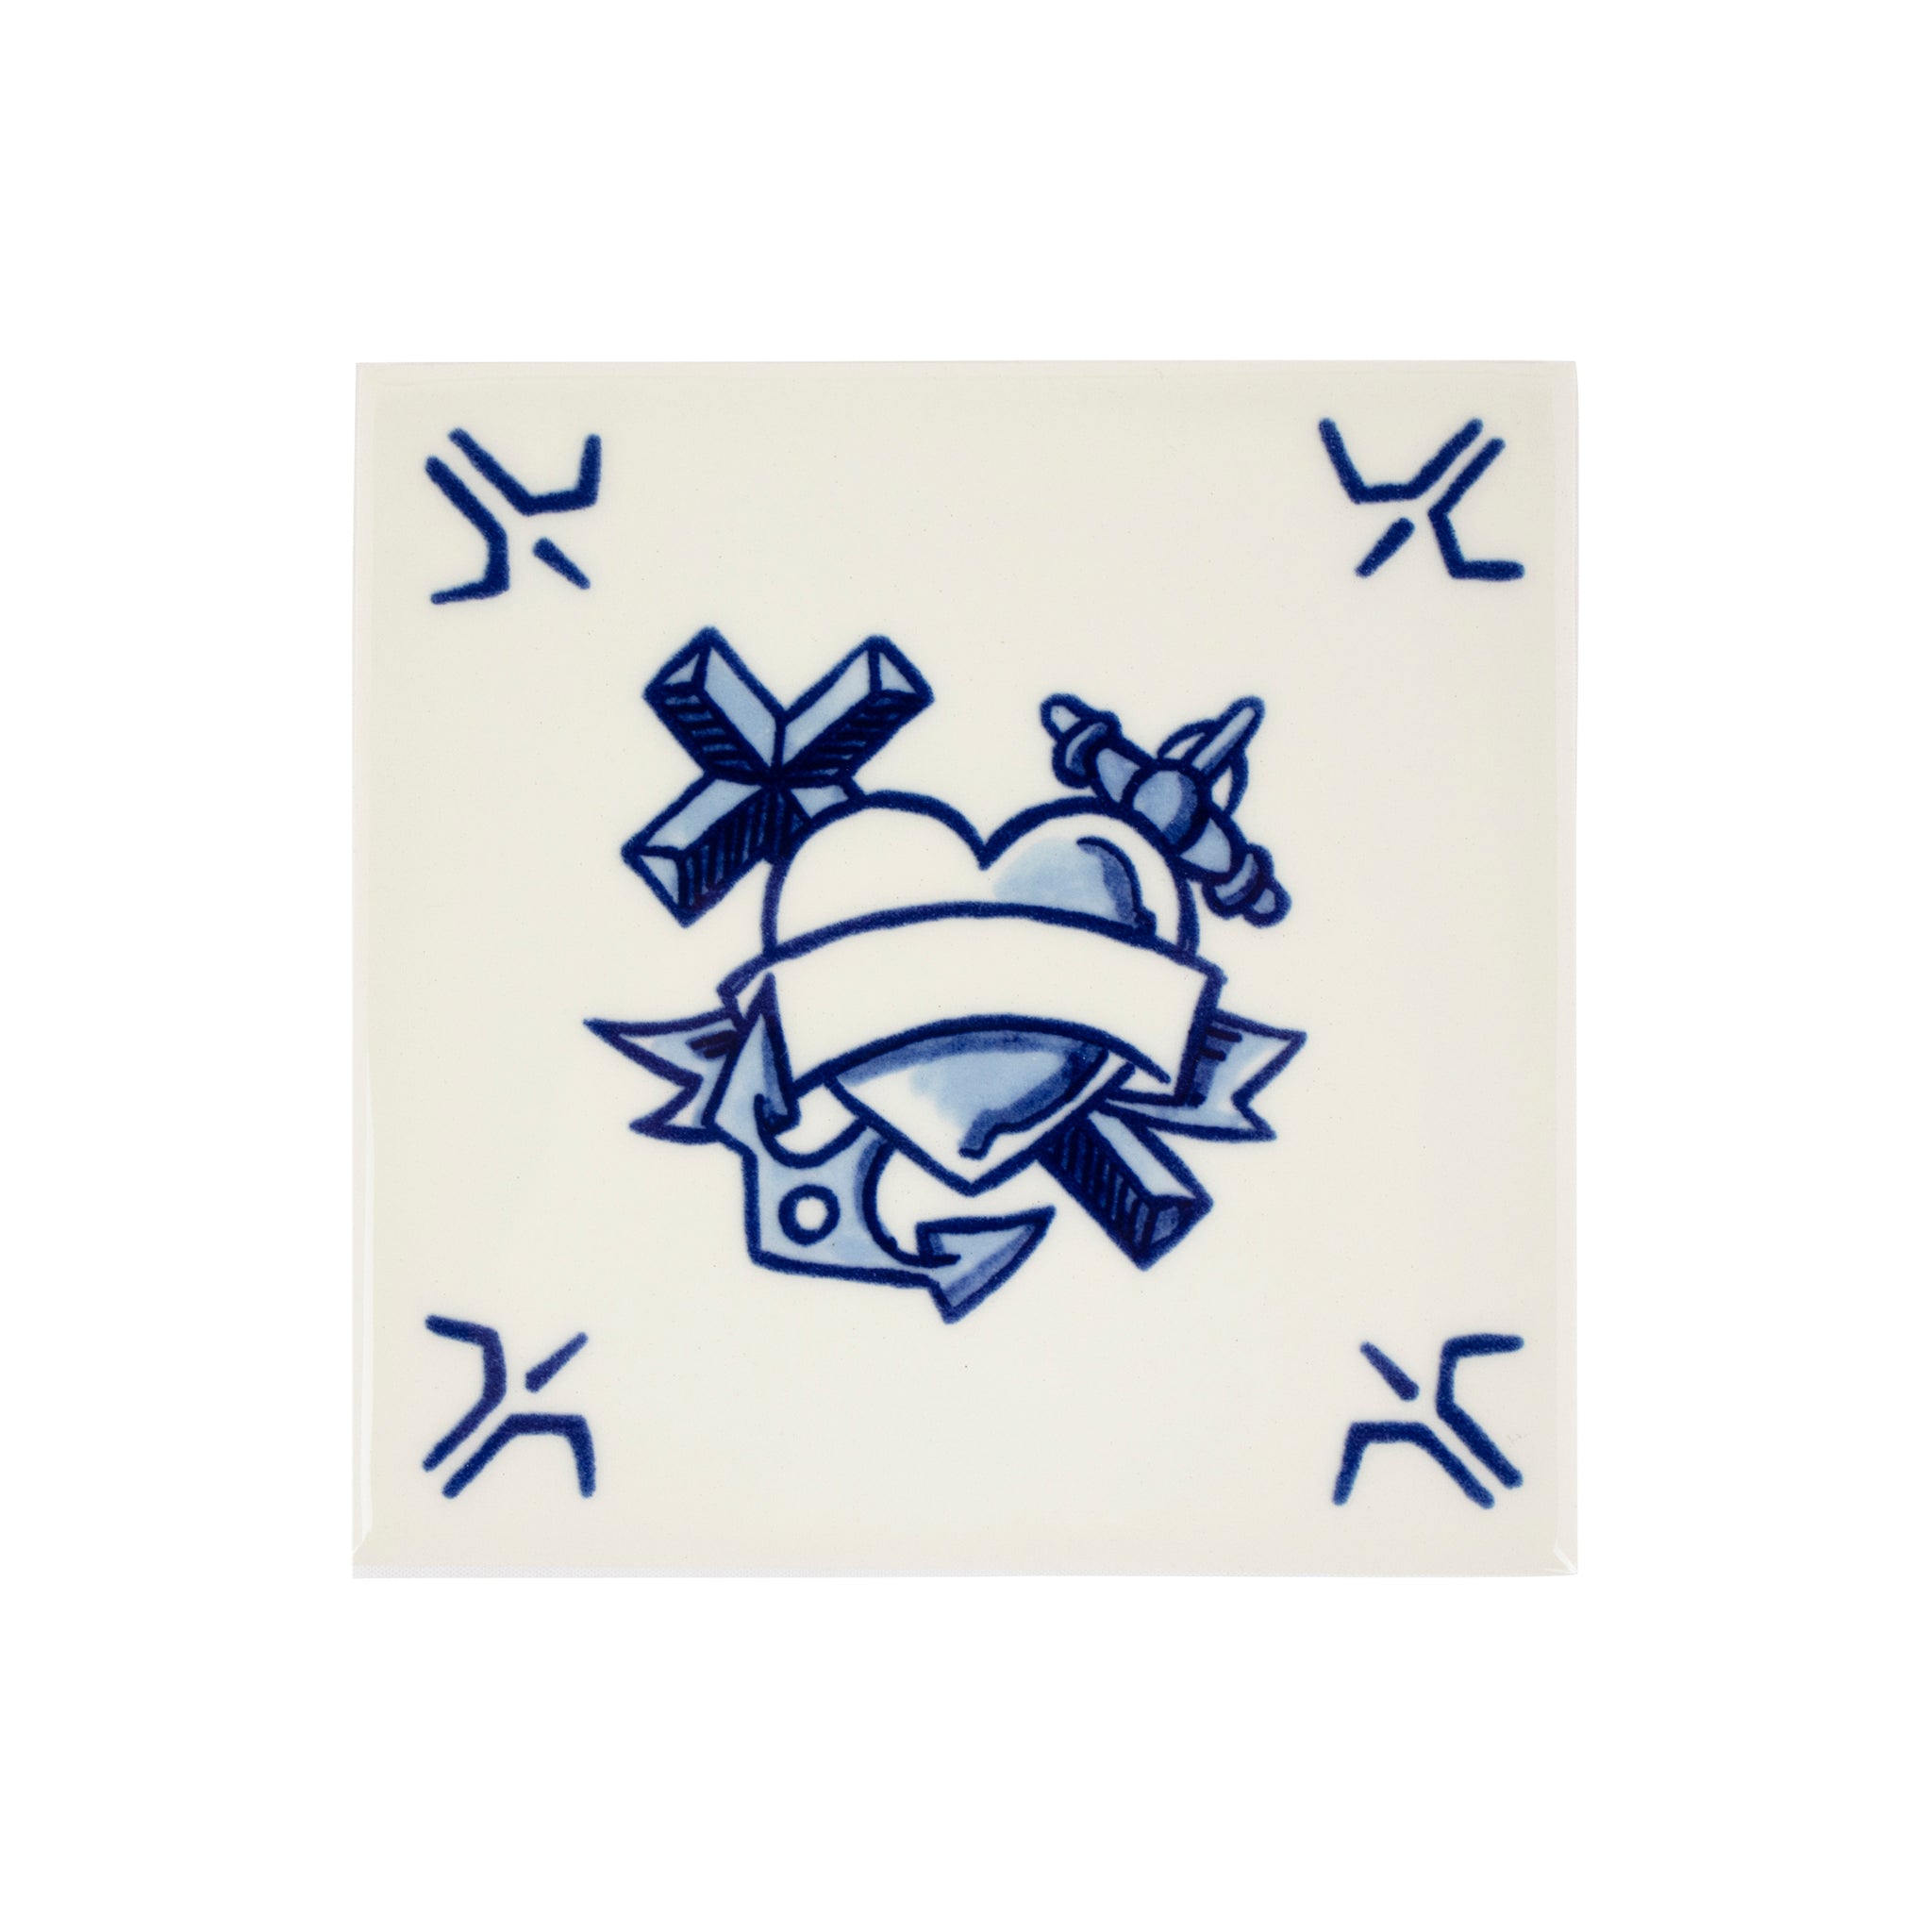 Schiffmacher Royal Blue Tattoo • Tegel • Schiffmacher Royal Blue Tattoo is een unieke samenwerking tussen tattoo artist Henk Schiffmacher en Royal Delft - Porcelyne Fles. De oude ambachten en tradities van beiden komen samen in prachtige objecten als vazen, borden en tegels. Rijk aan cultuur en historie.